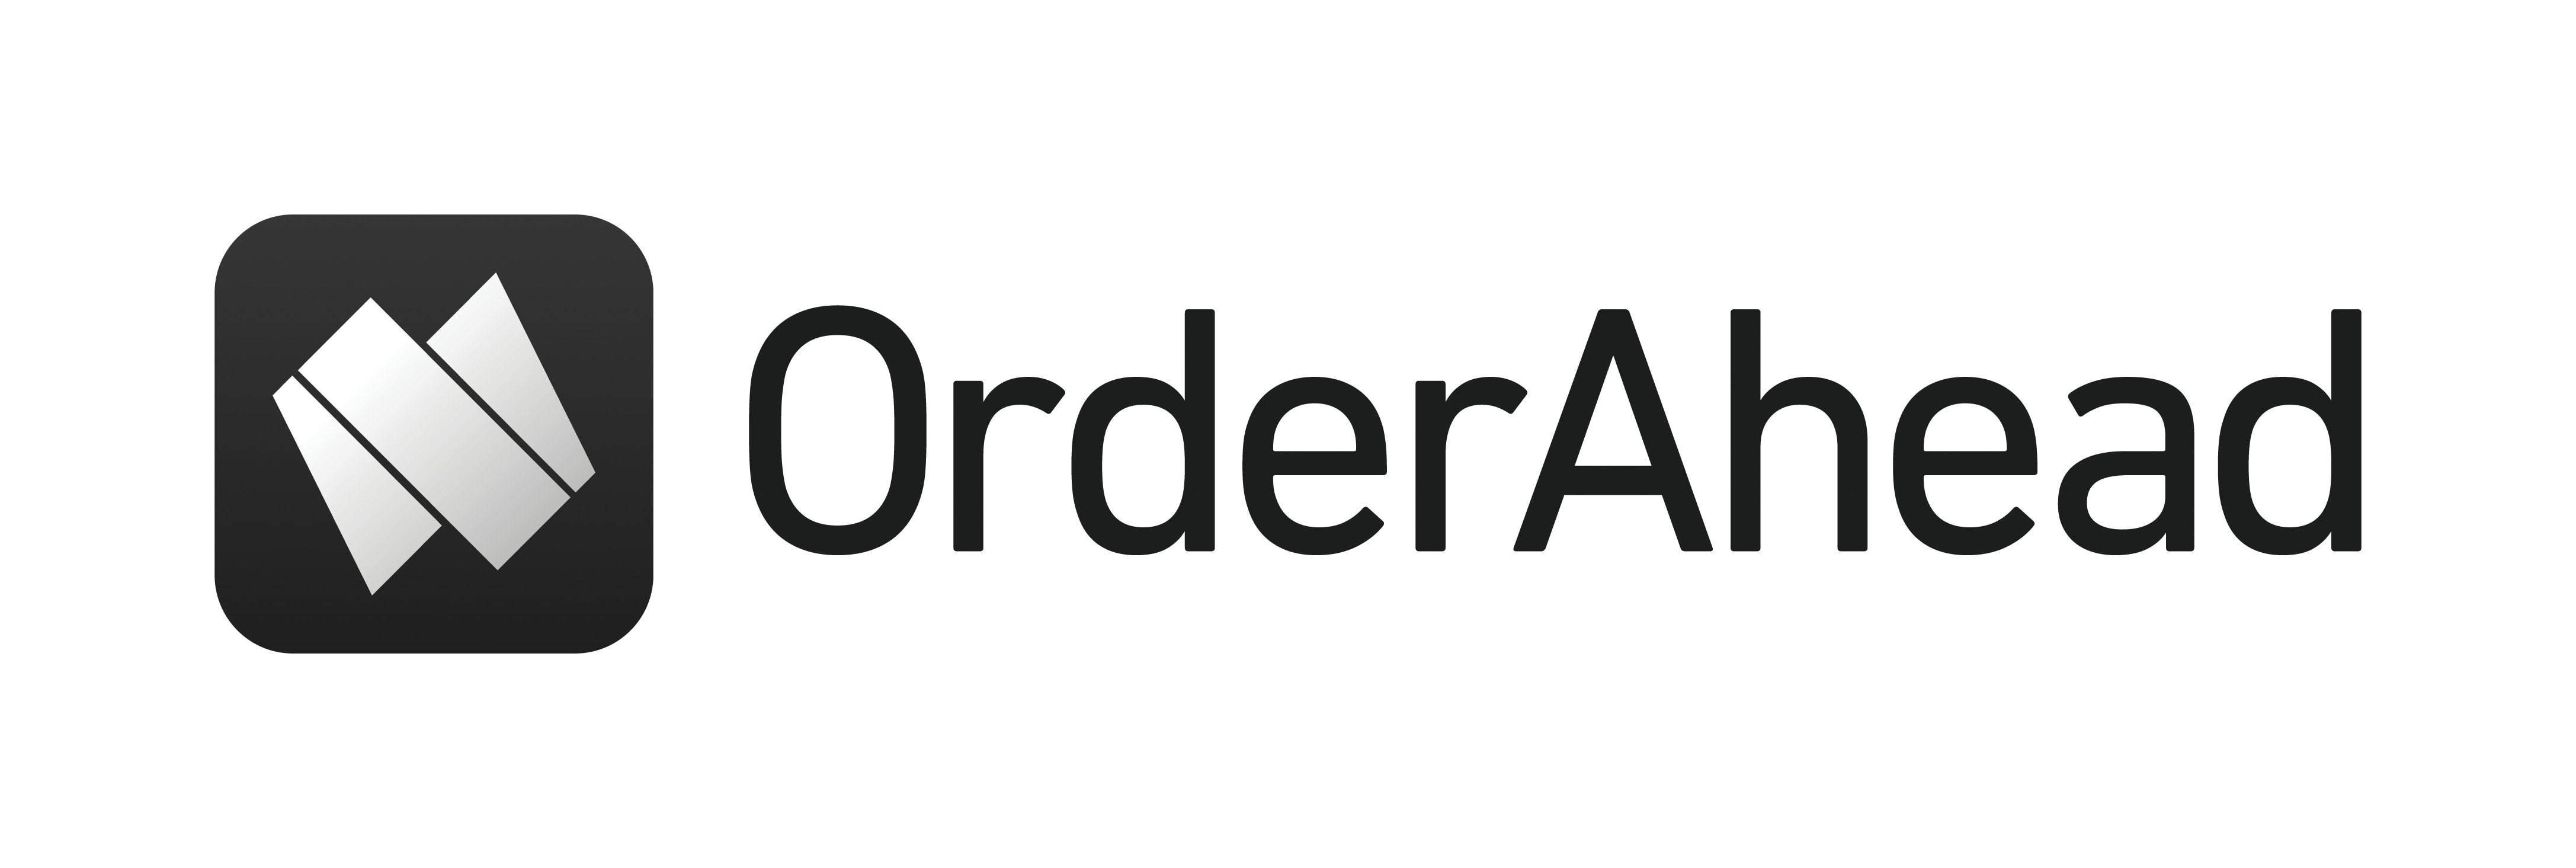 OrderAhead